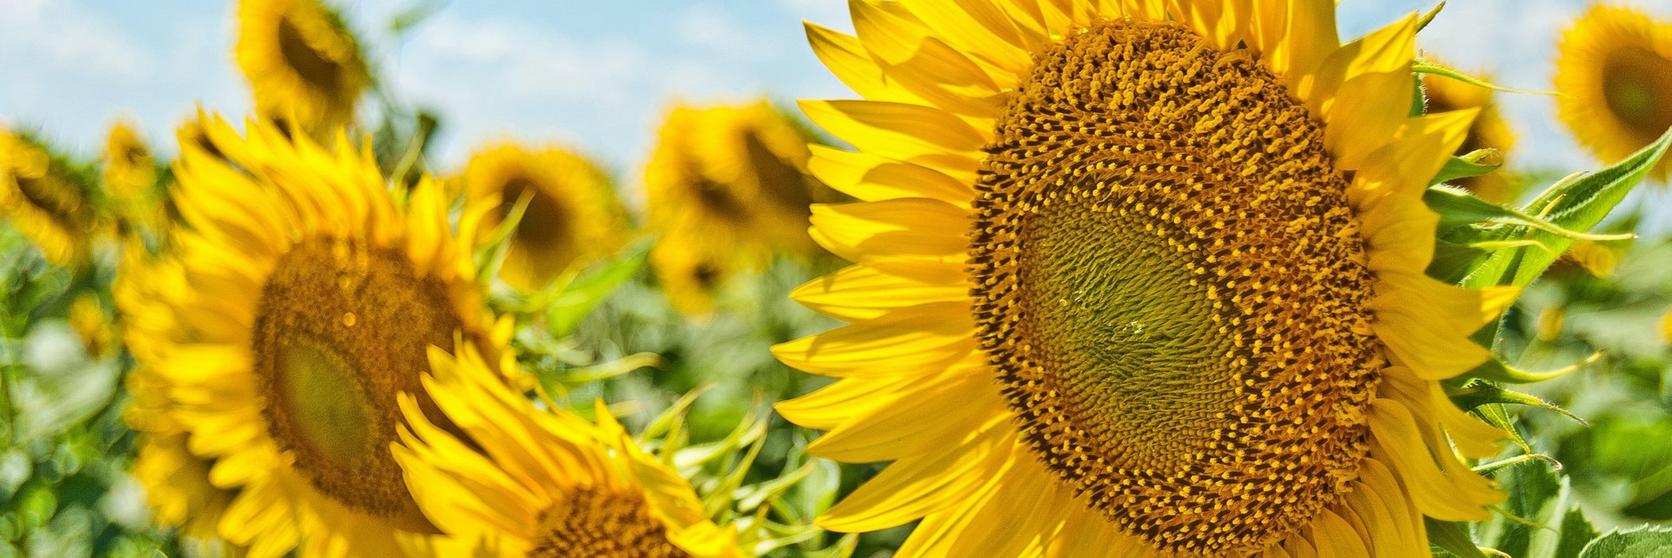 tall-sunflowers-green-field